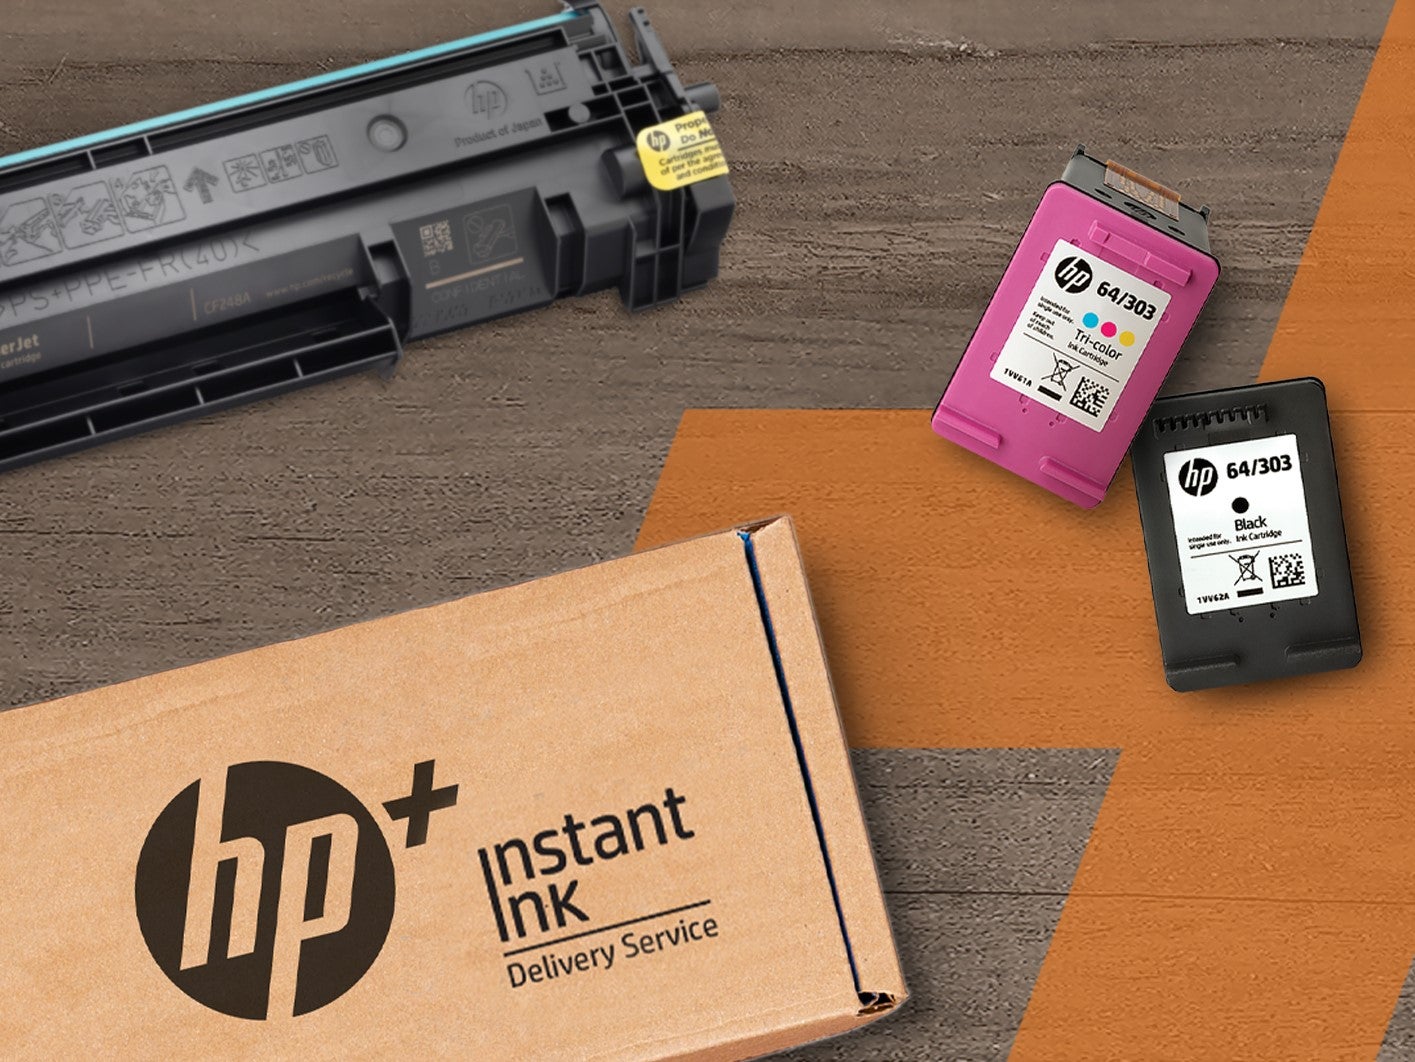 #HP Instant Ink und HP+: So funktionieren die Drucker-Services von HP